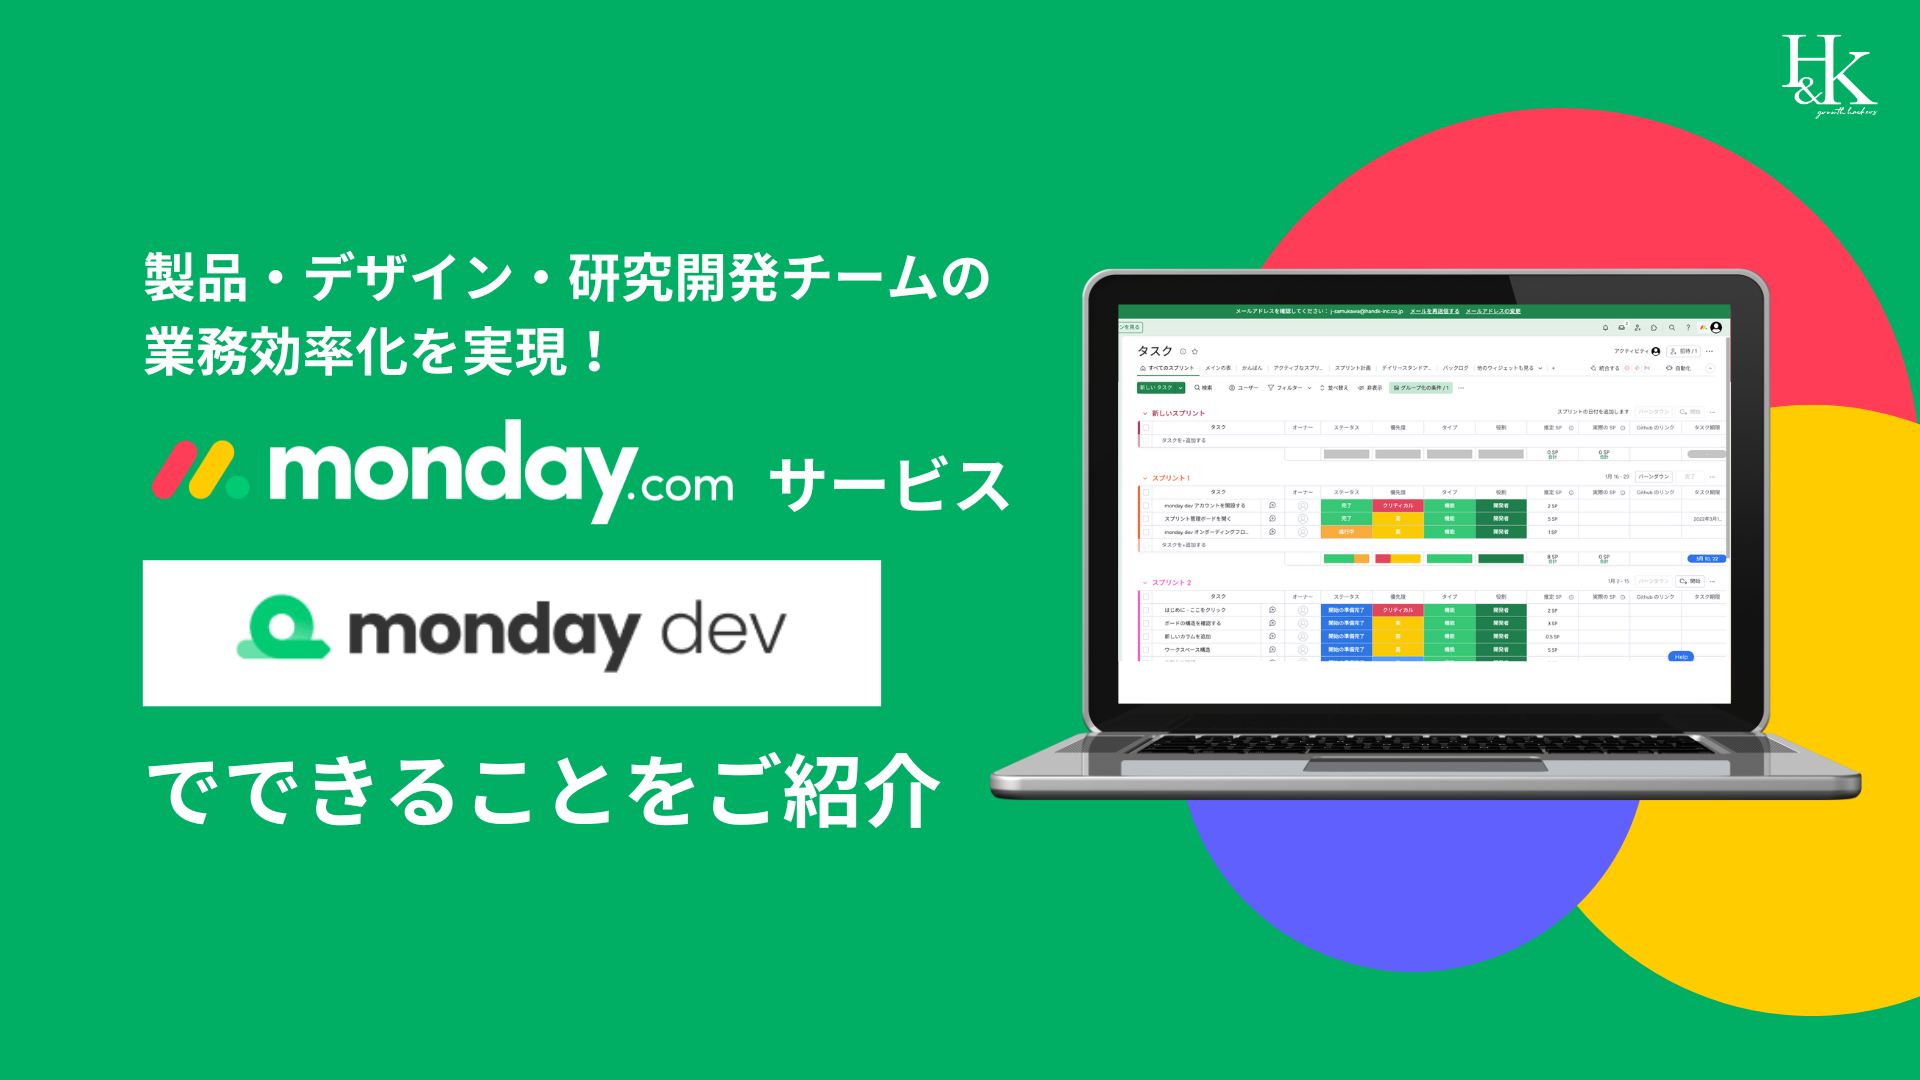 製品・デザイン・研究開発チームの業務効率化を実現！「monday.com」サービス「monday dev」でできることをご紹介